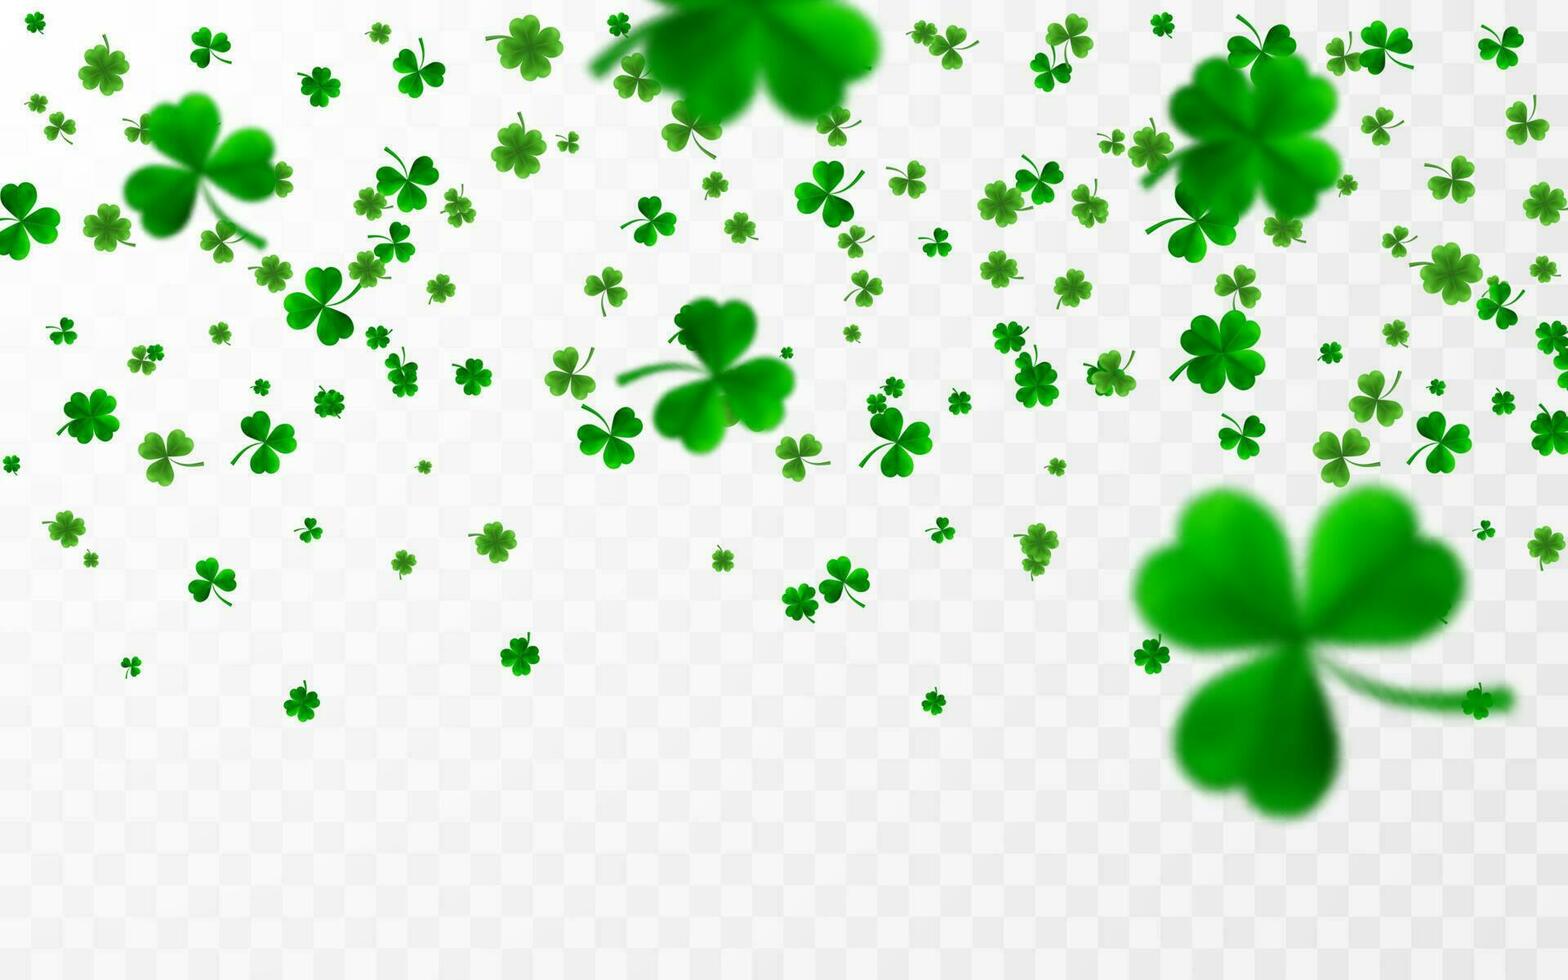 heilige Patrick dag grens met groen vier en boom 3d blad klaverblaadjes. Iers Lucky en succes symbolen. vector illustratie